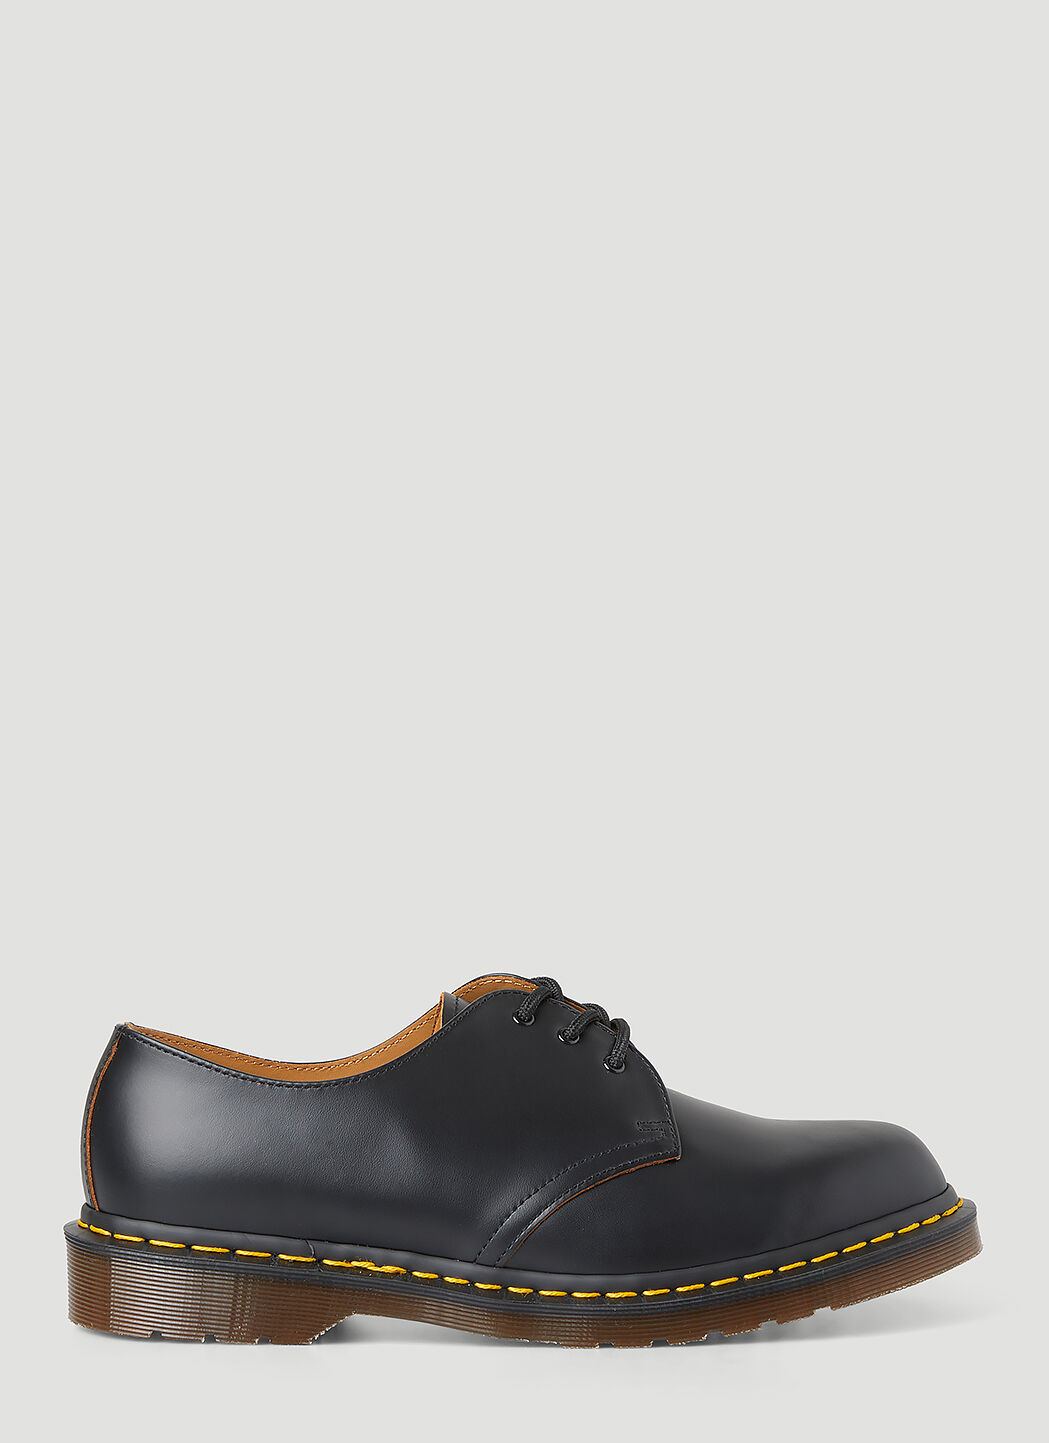 Rick Owens x Dr. Martens Vintage 1461 Tech Shoes Black rod0256002